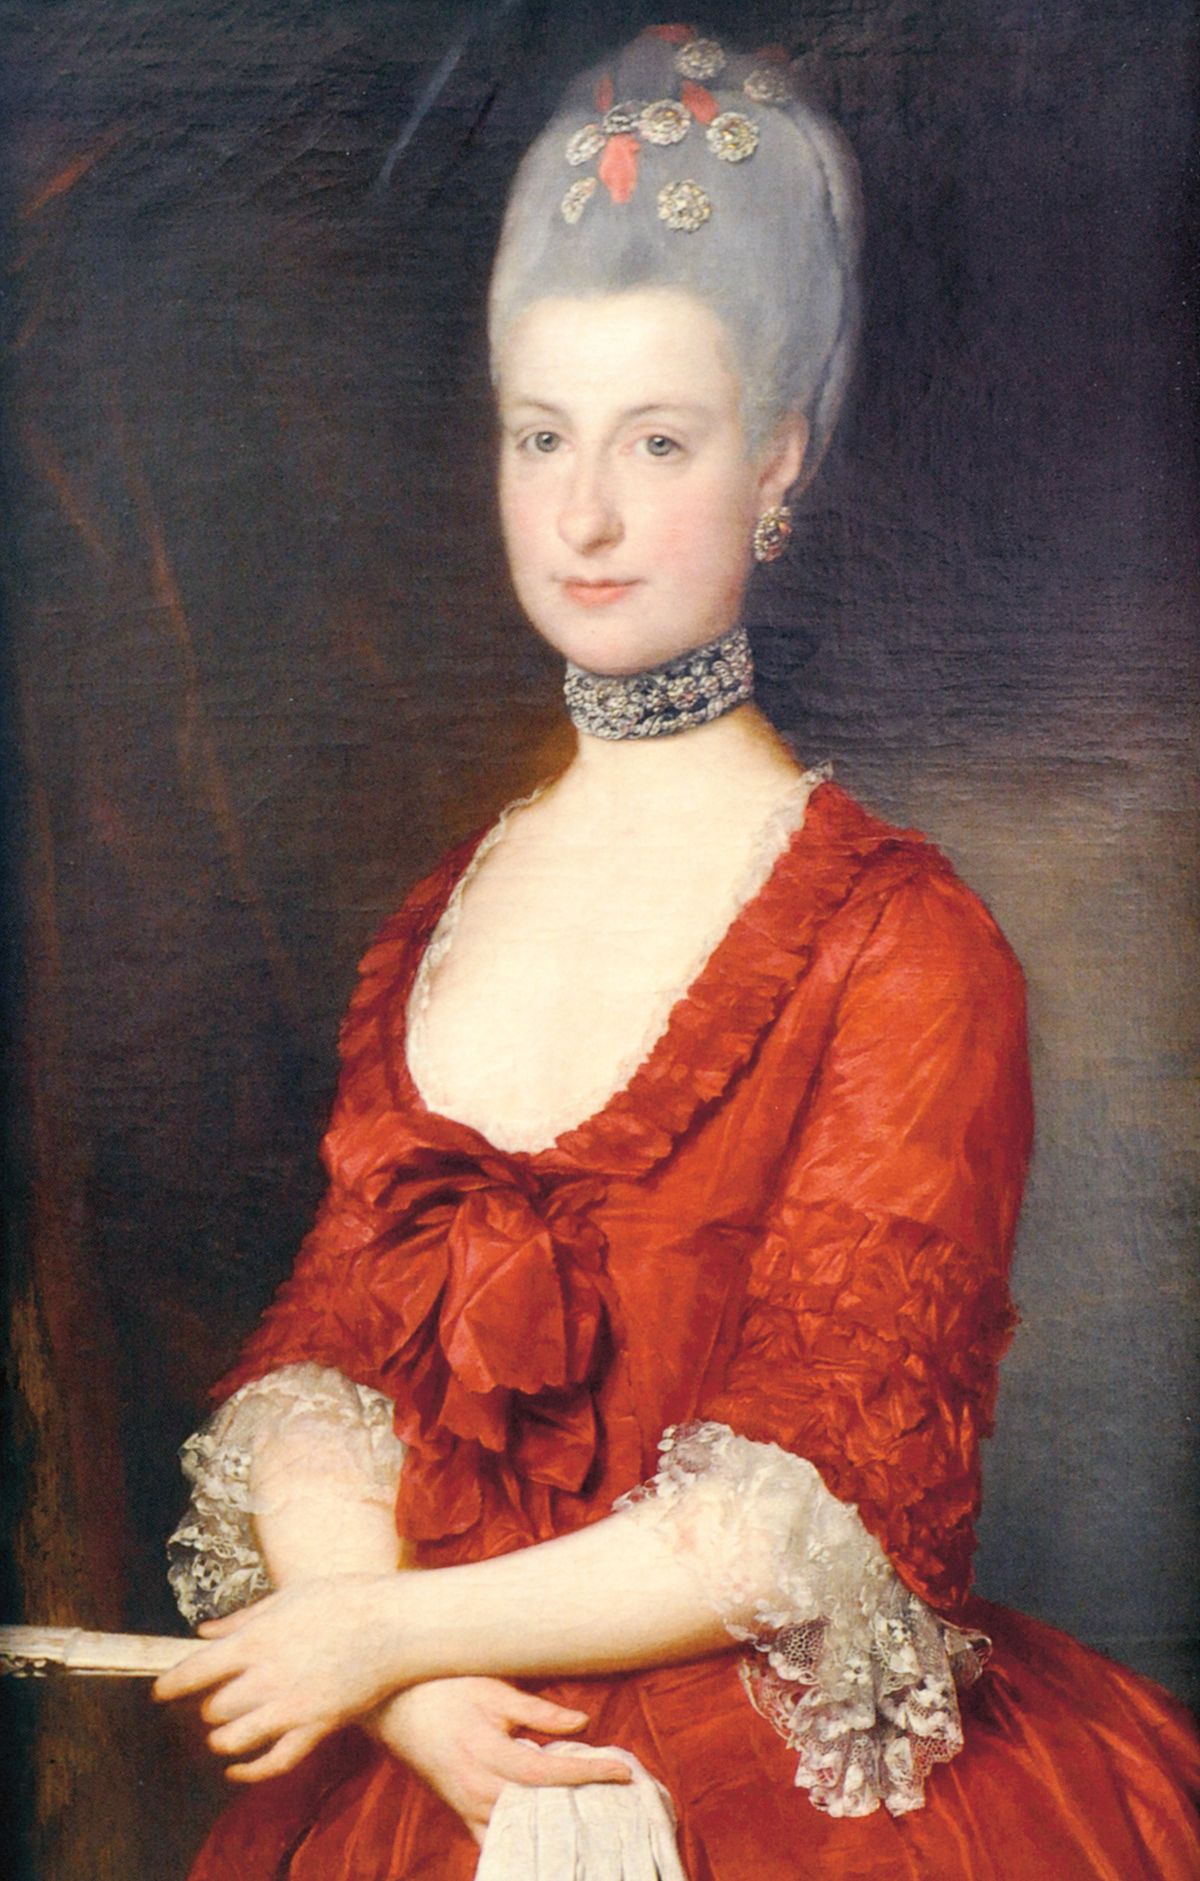 Arcivévodkyně Marie Kristina se jako jediná z dcer panovnice provdala z lásky.